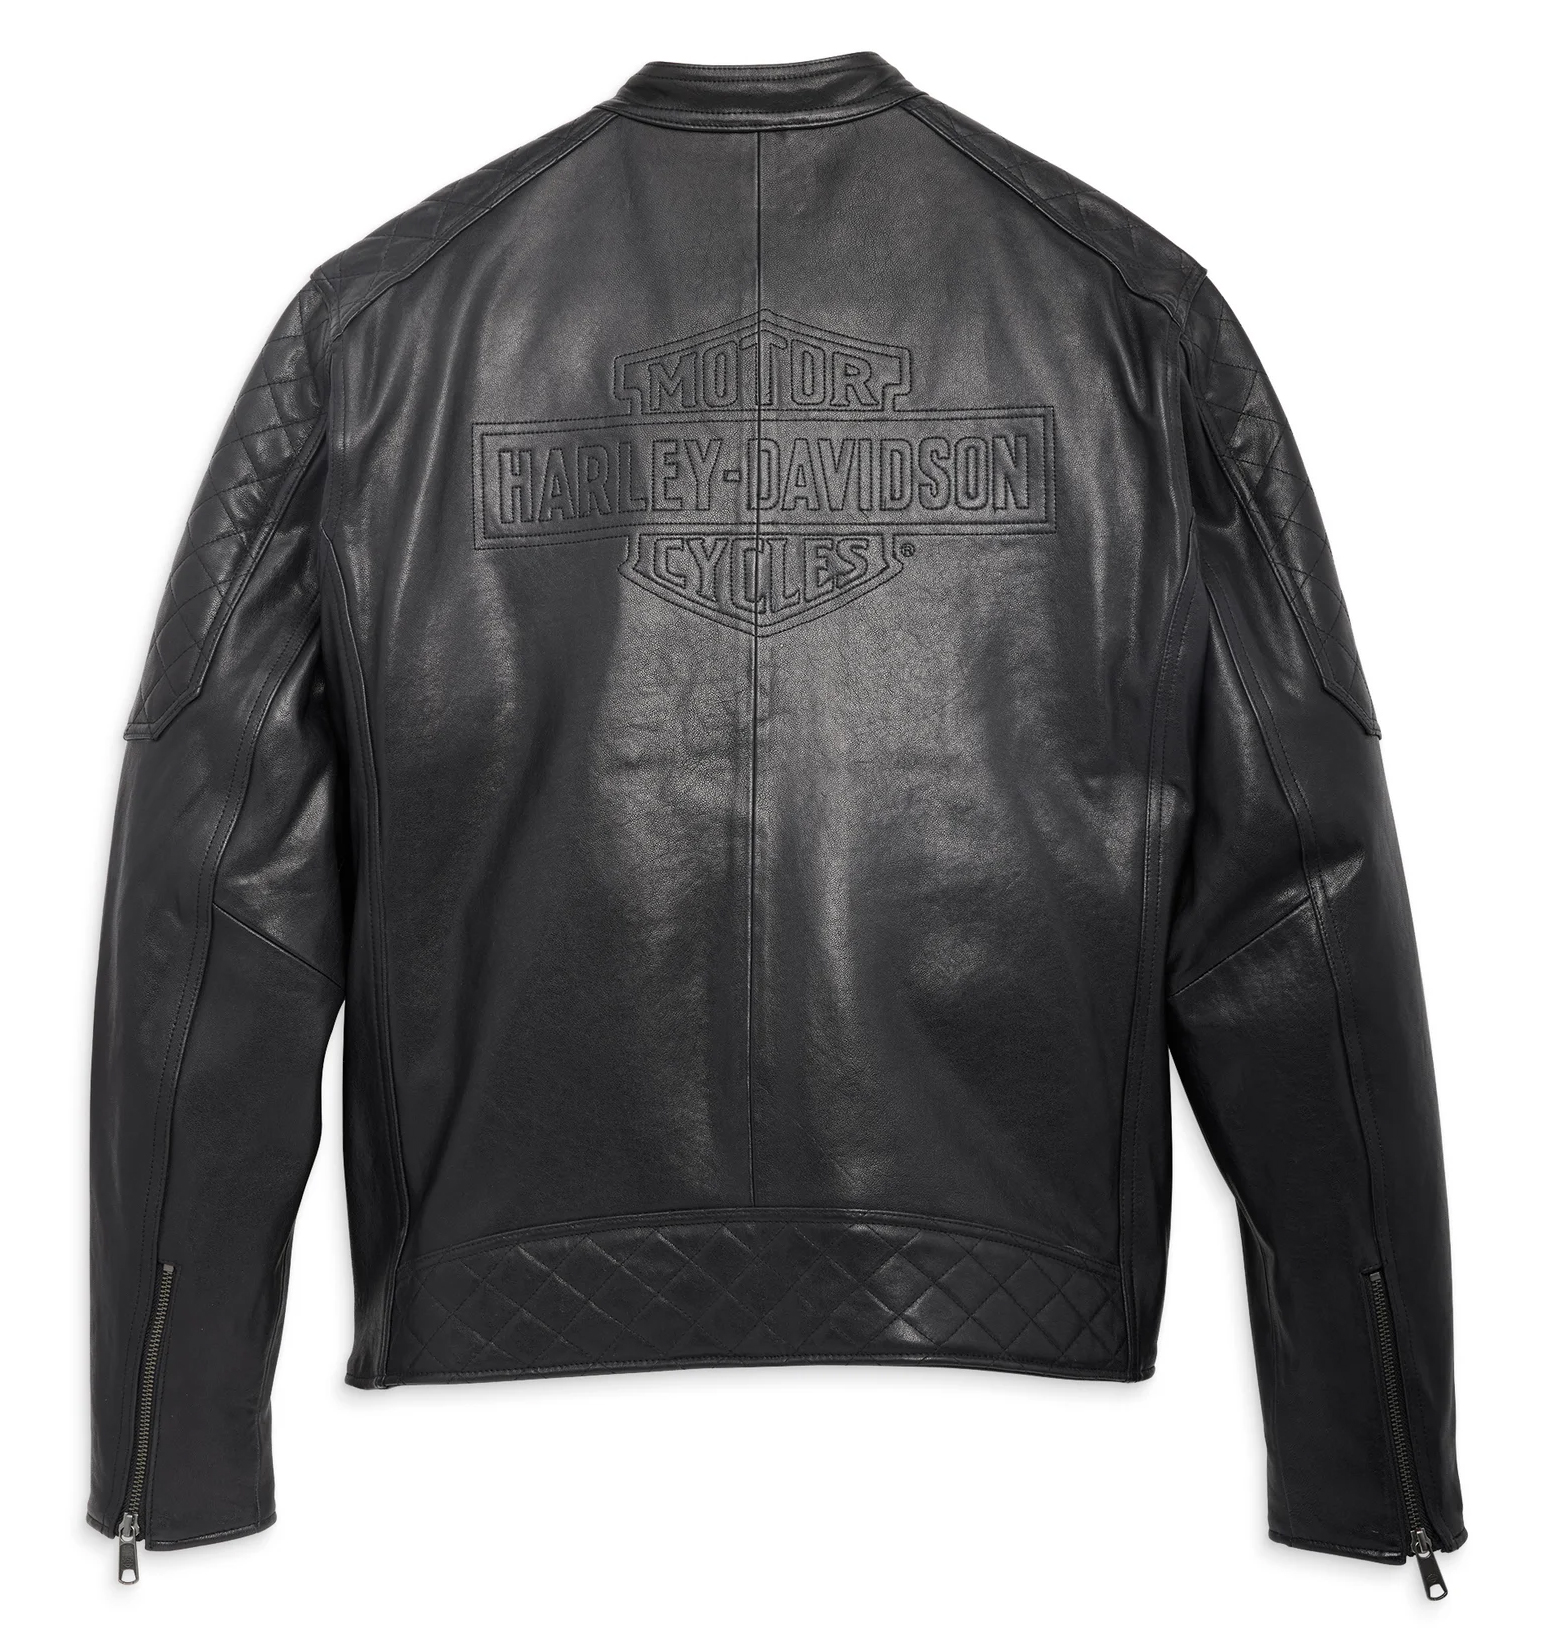 97006-23VM Harley-Davidson Leather Jacket Mechanic black at Thunderbike ...